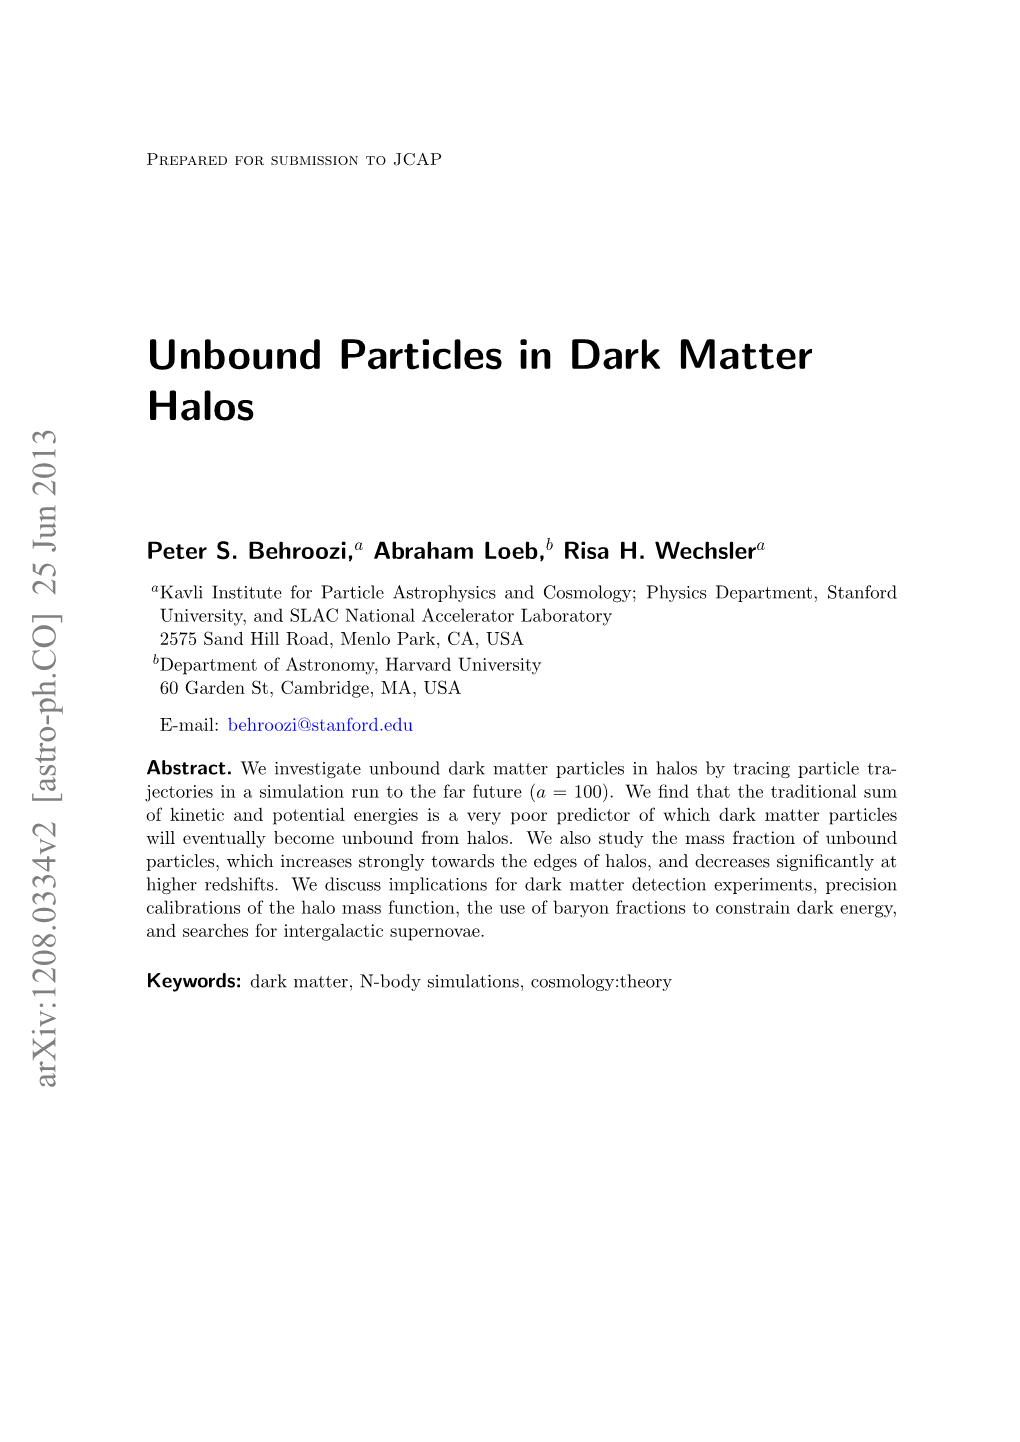 Unbound Particles in Dark Matter Halos